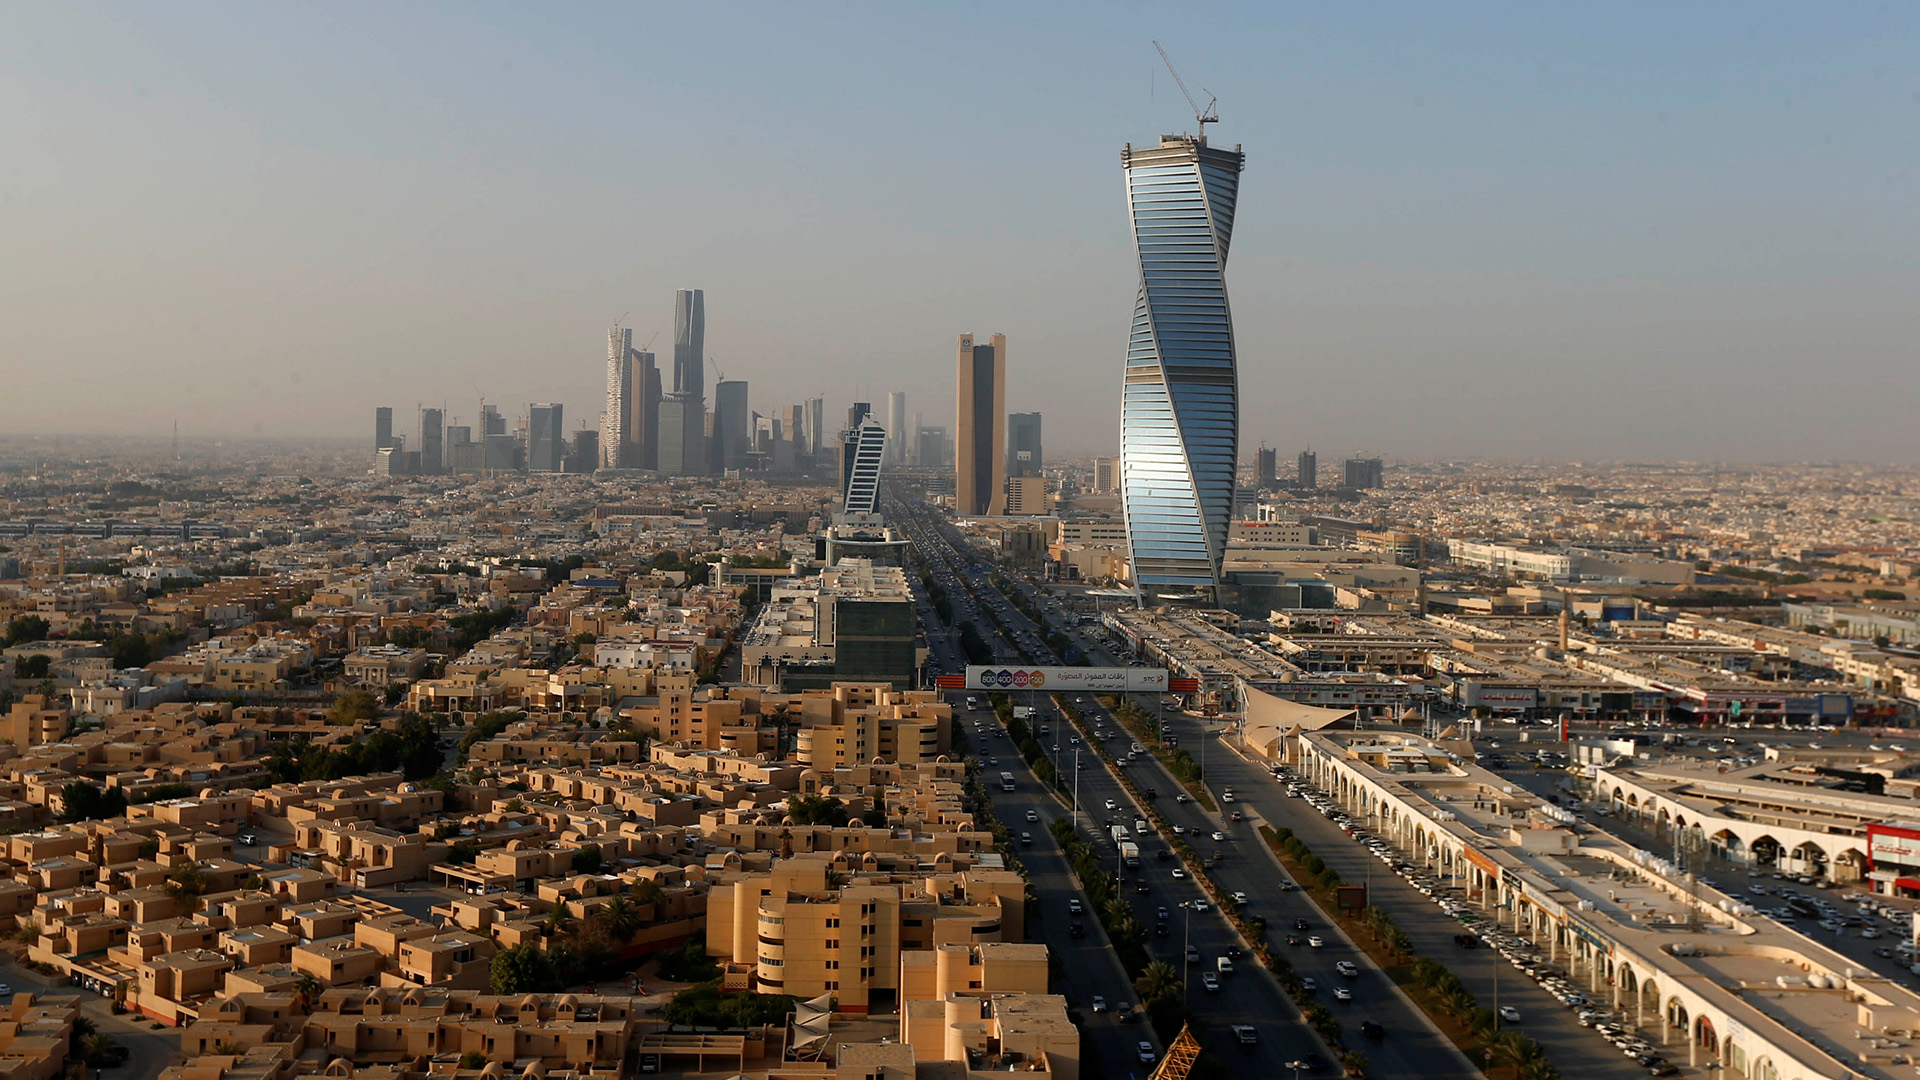 Blick auf das Zentrum von Riad | REUTERS